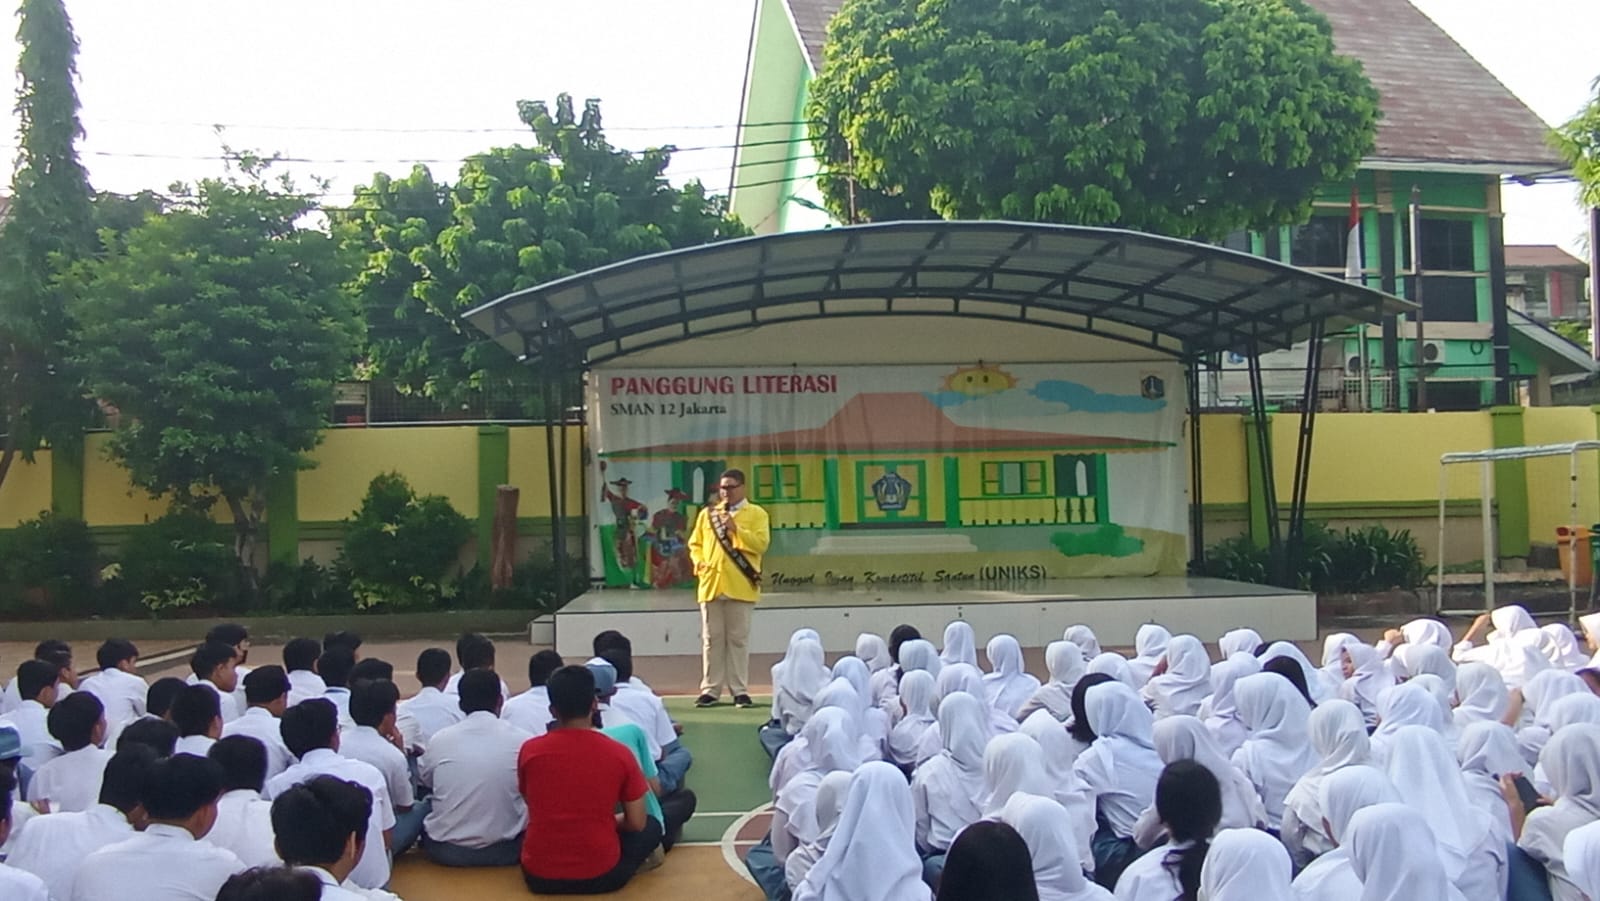 Jelajah Duta Baca Ke SMA Negeri 12 Jakarta